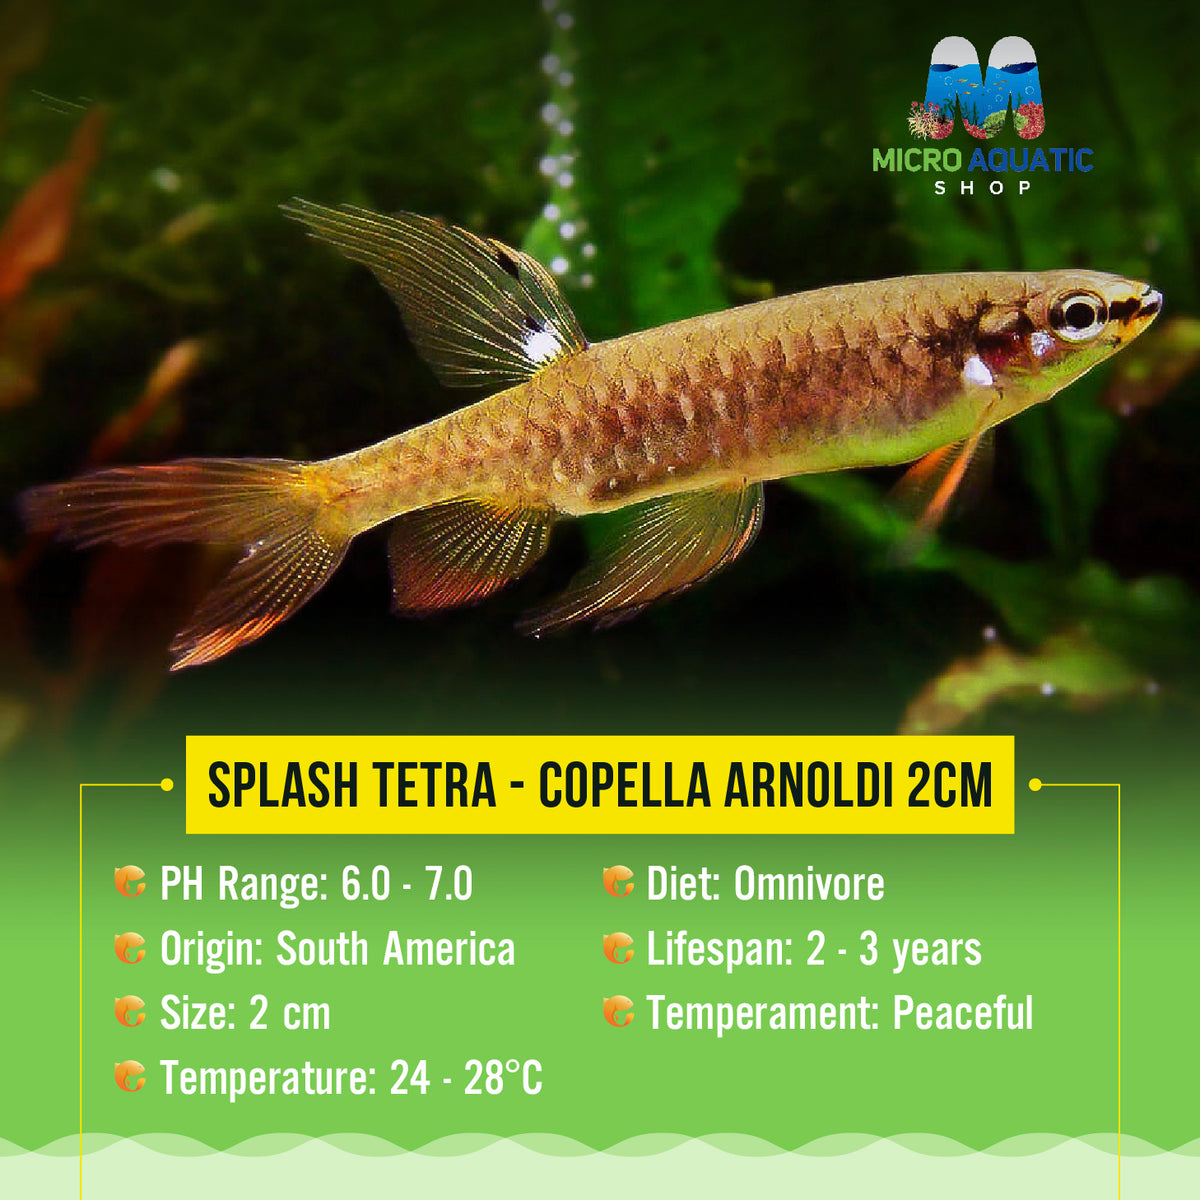 Splash Tetra - Copella arnoldi 2cm